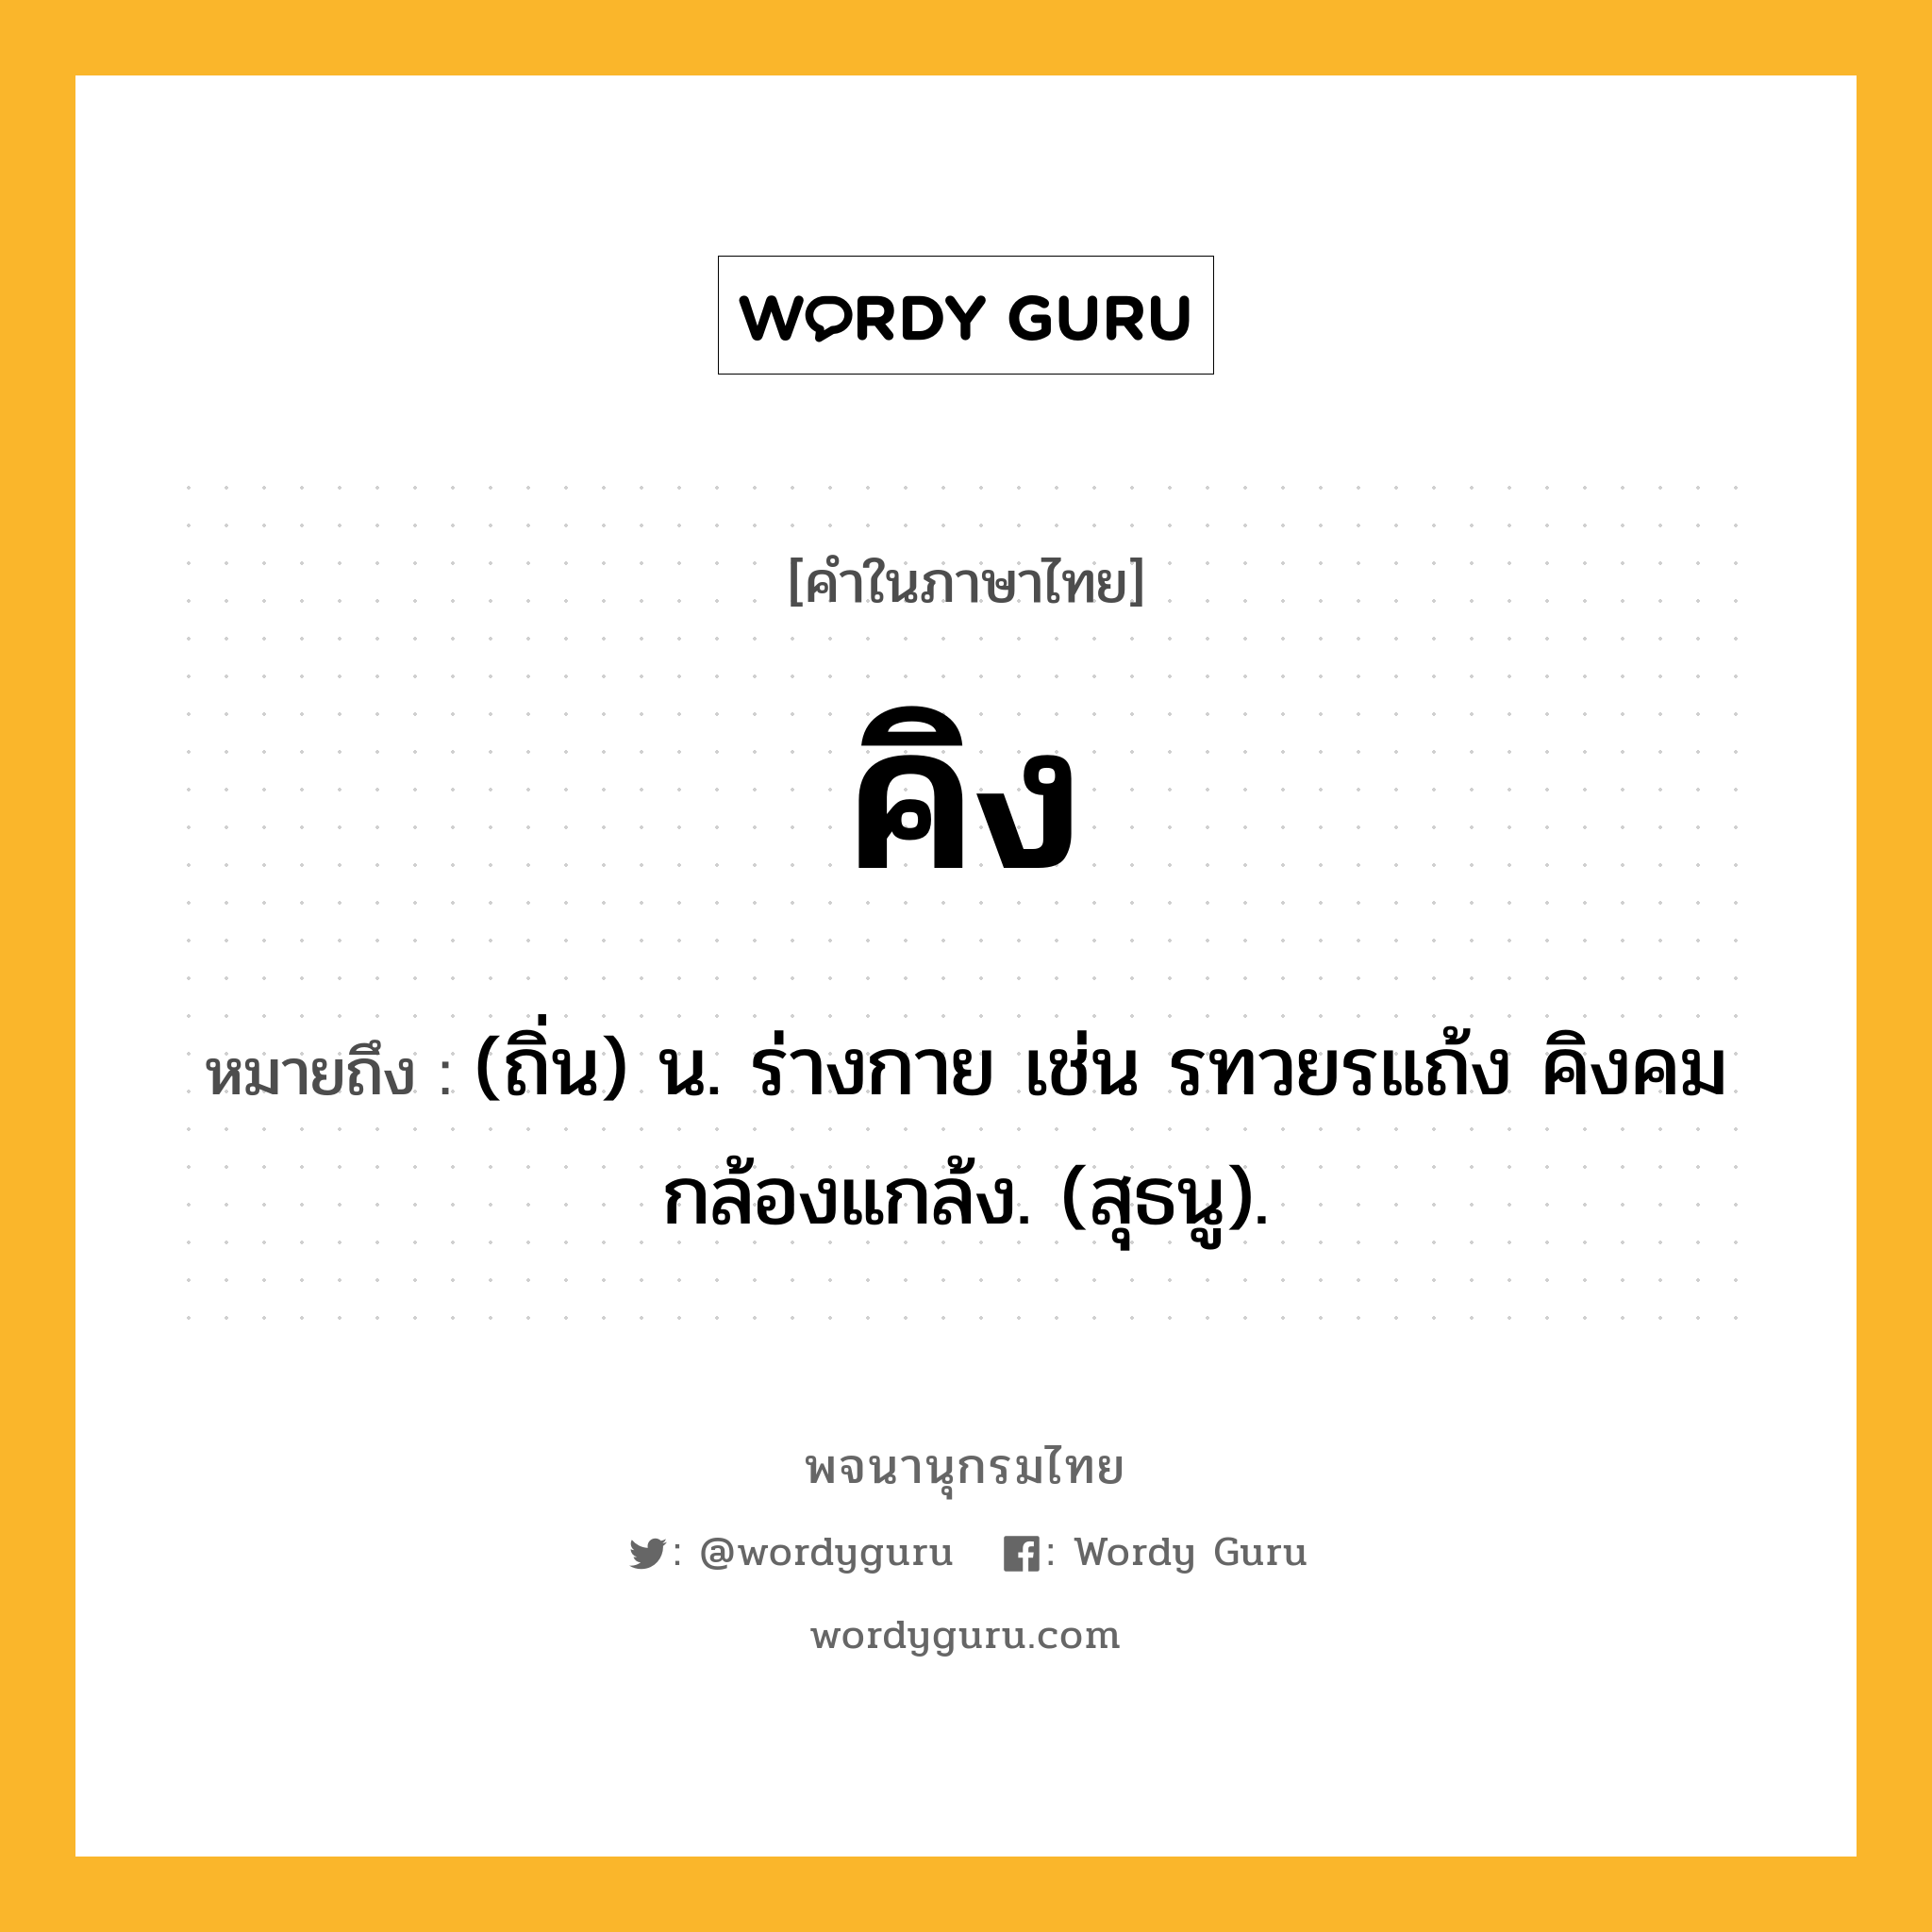 คิง ความหมาย หมายถึงอะไร?, คำในภาษาไทย คิง หมายถึง (ถิ่น) น. ร่างกาย เช่น รทวยรแถ้ง คิงคมกล้องแกล้ง. (สุธนู).